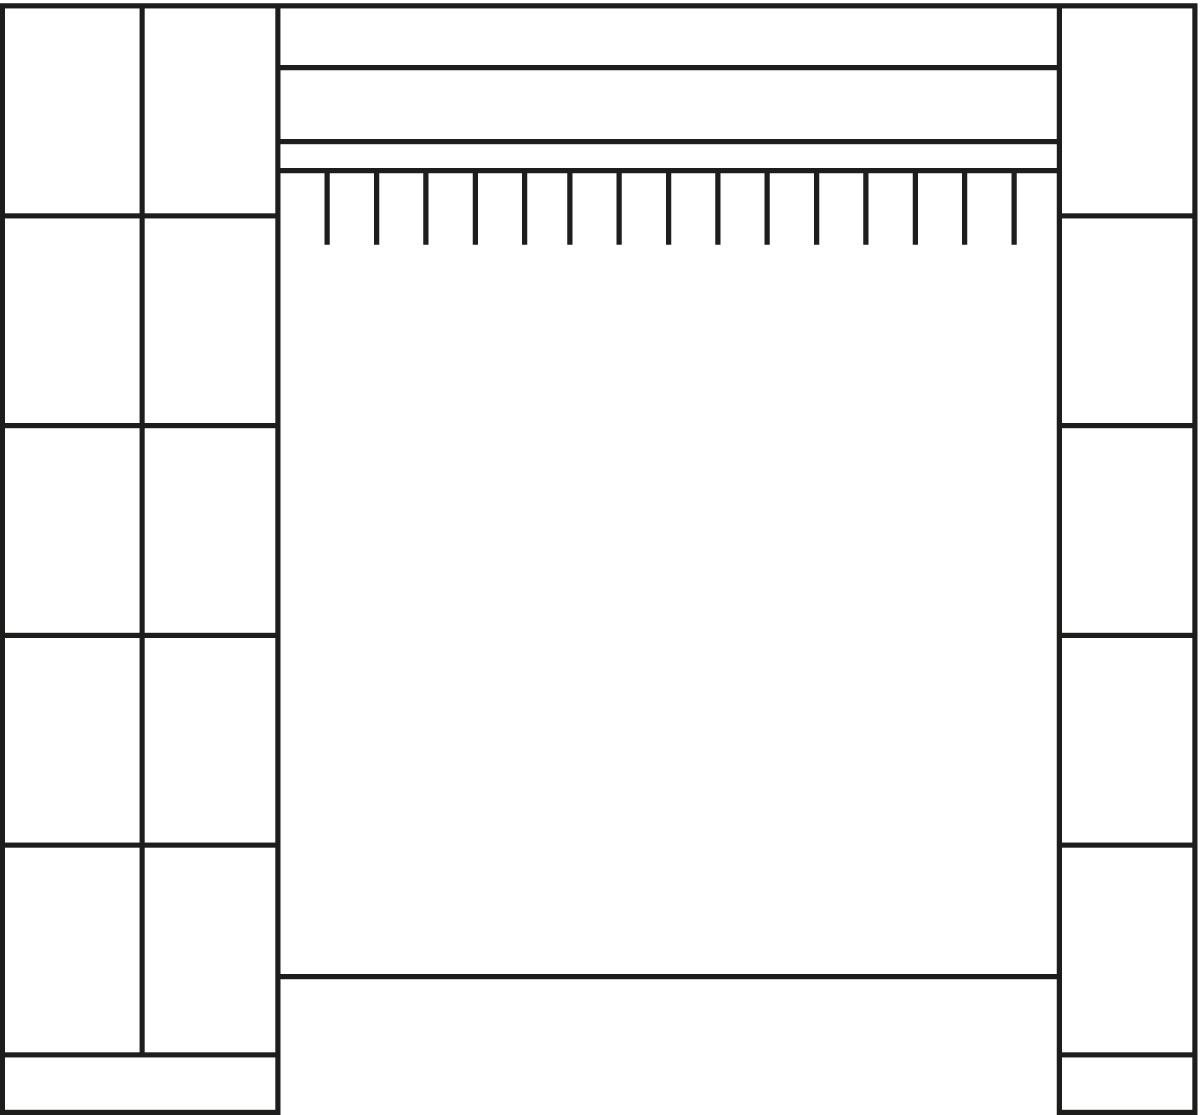 C+P Schließfach-Garderobe Classic lichtgrau mit 15 Fächern, Breite 2760 mm Technische Zeichnung 1 ZOOM